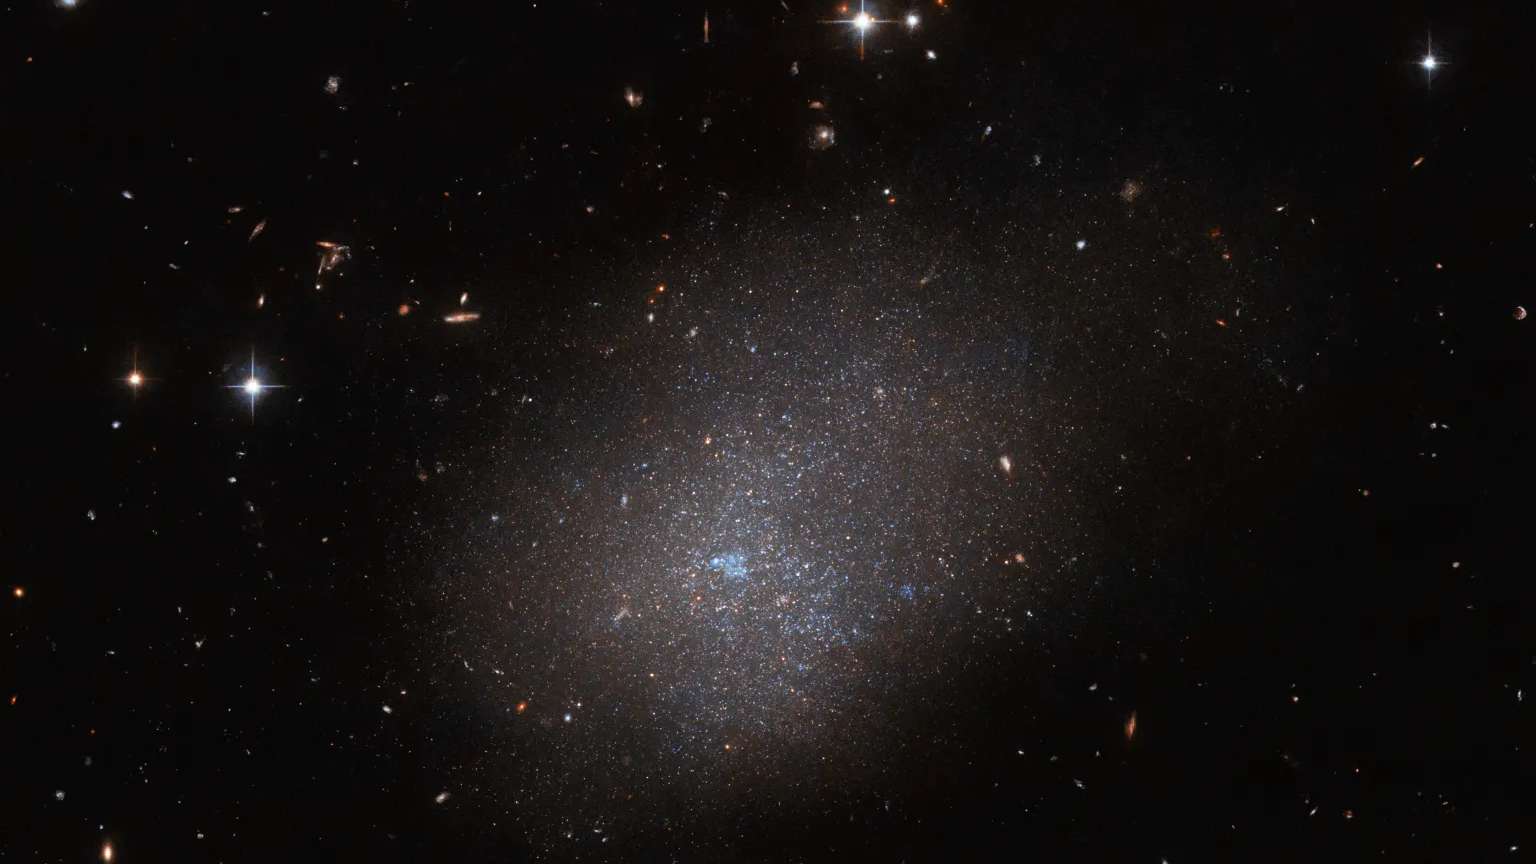 A galáxia ESO 300-16 é o destaque desta imagem do Telescópio Espacial Hubble. Esta galáxia, que fica a 28,7 milhões de anos-luz da Terra, na Constelação de Eridanus, é um conjunto de estrelas que se assemelha a uma nuvem cintilante. Outras galáxias distantes e estrelas em primeiro plano completam a imagem. Devido à sua forma indefinida, a ausência de um bulbo central ou braços espirais, ESO 300-16 é classificada como uma galáxia irregular. Nela, há muitas estrelas, mas todas estão amontoadas